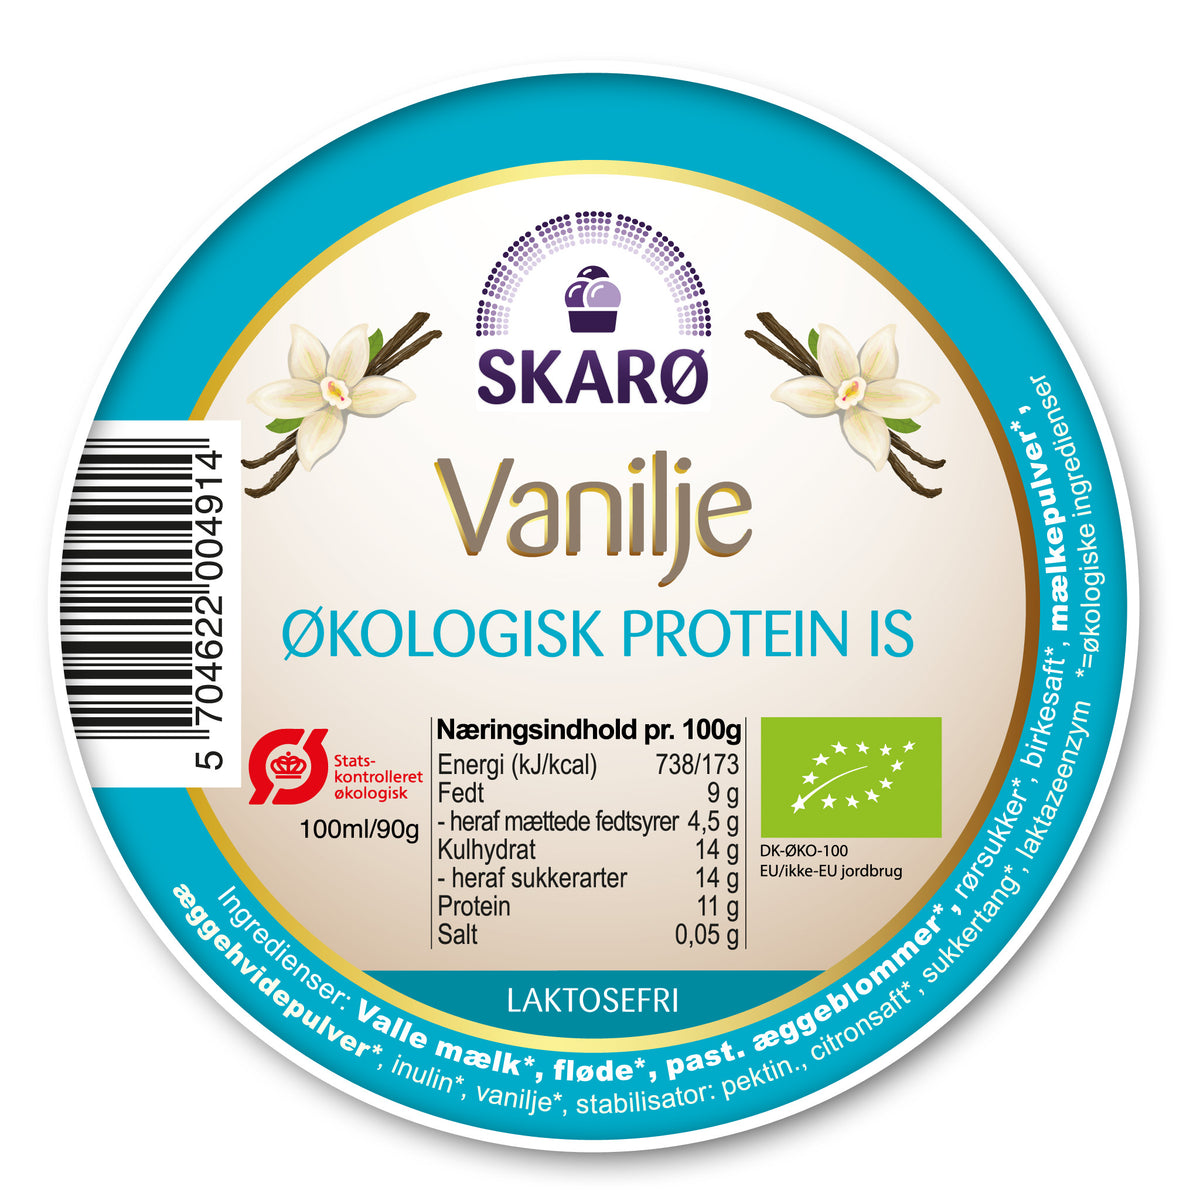 Økologisk Proteinis med Vanilje fra Skarø